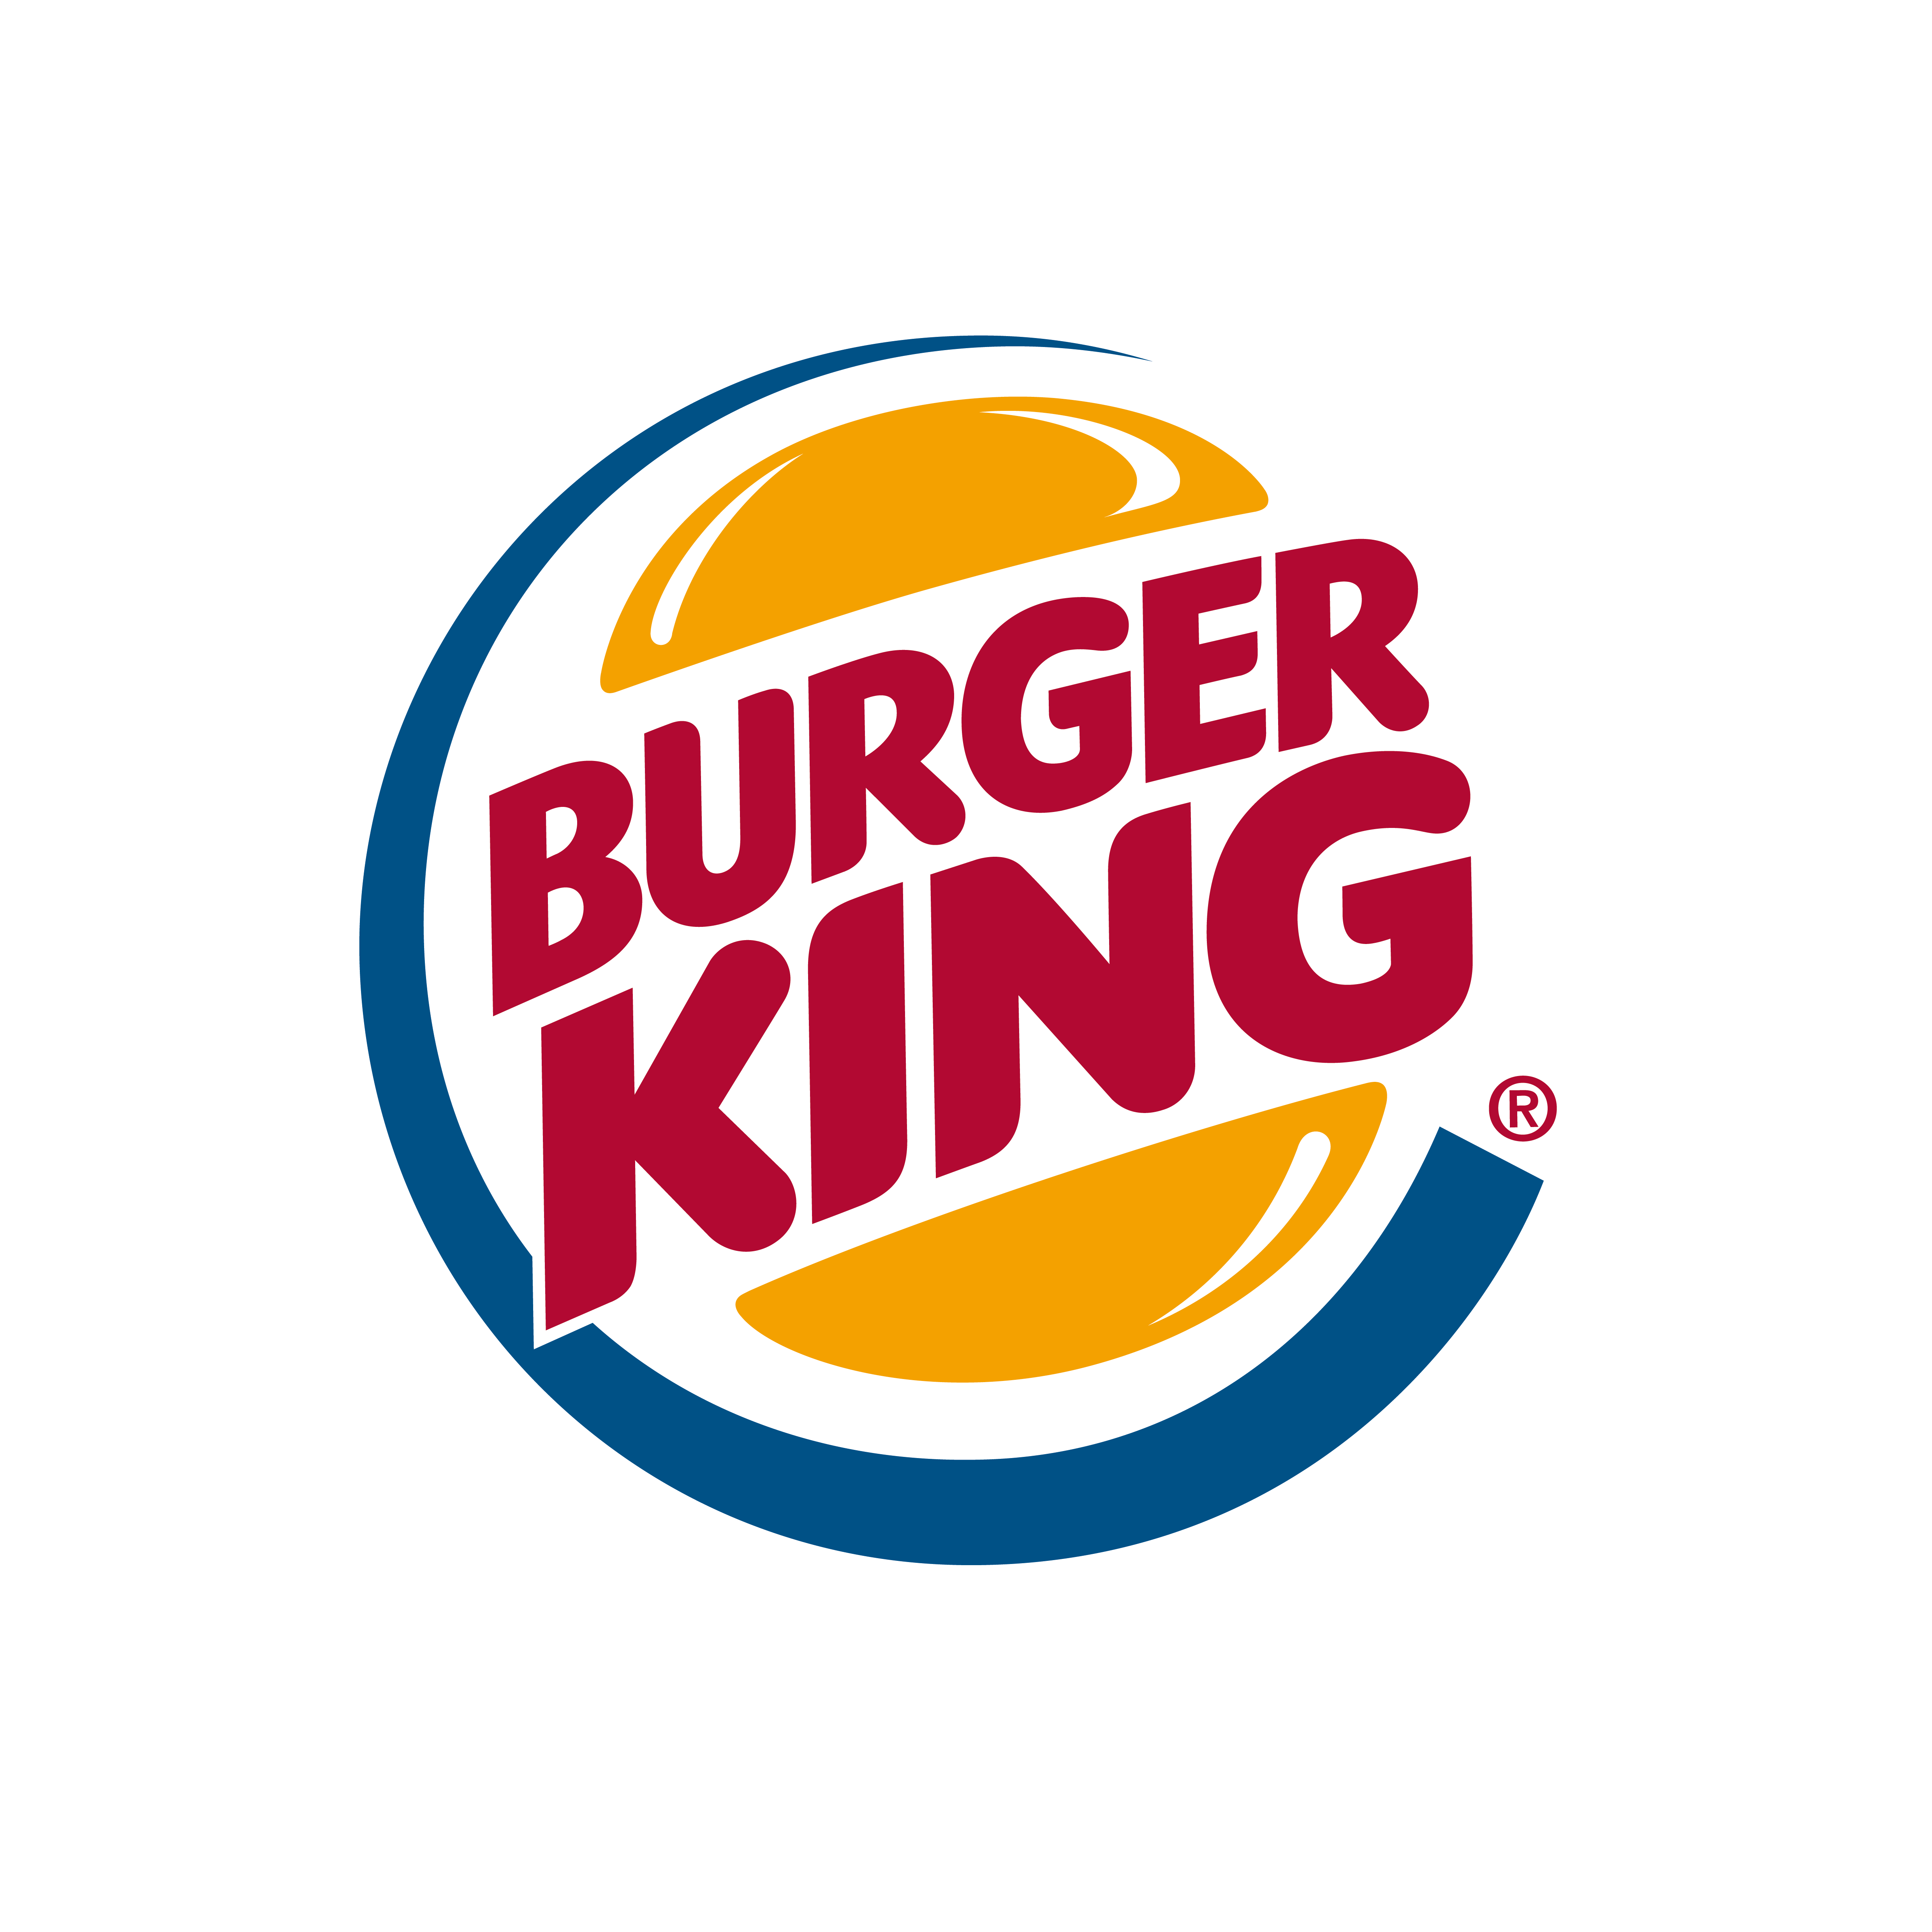 King Hamburger Discount Burger Milkshake Logo PNG Image